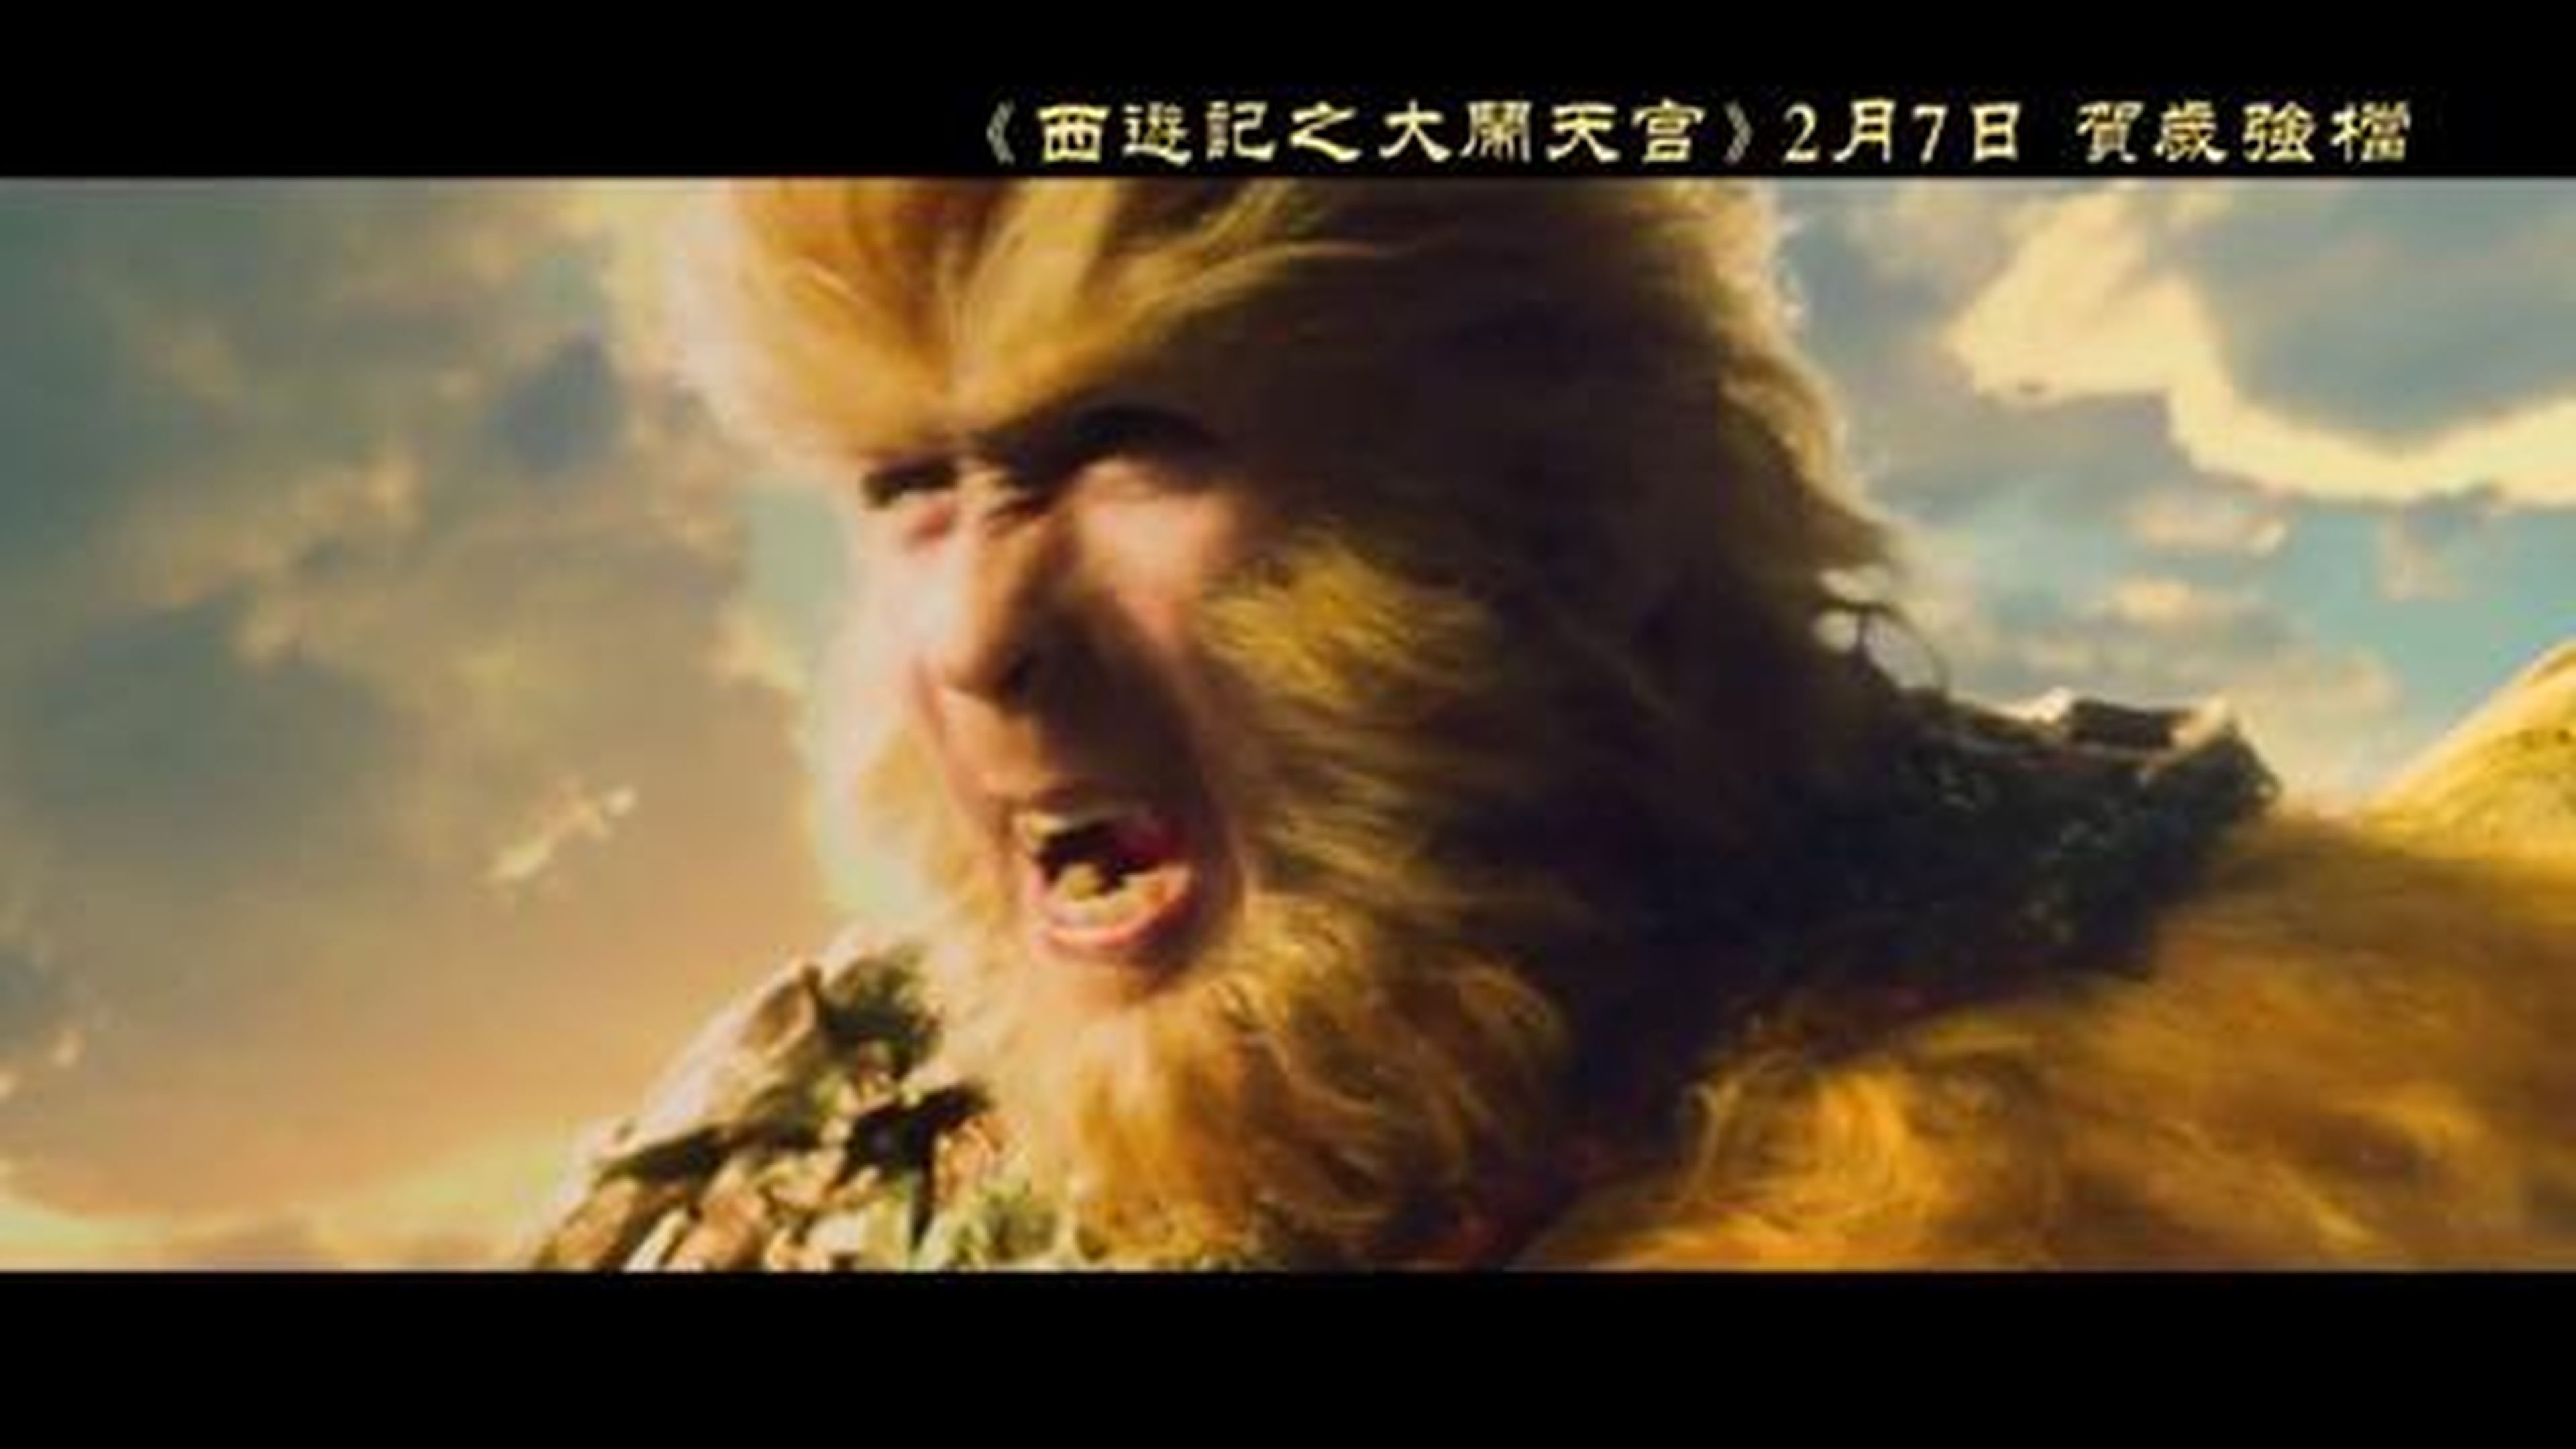 大鬧天宮 (The Monkey King) (2014) Trailer #2 - Donnie Yen